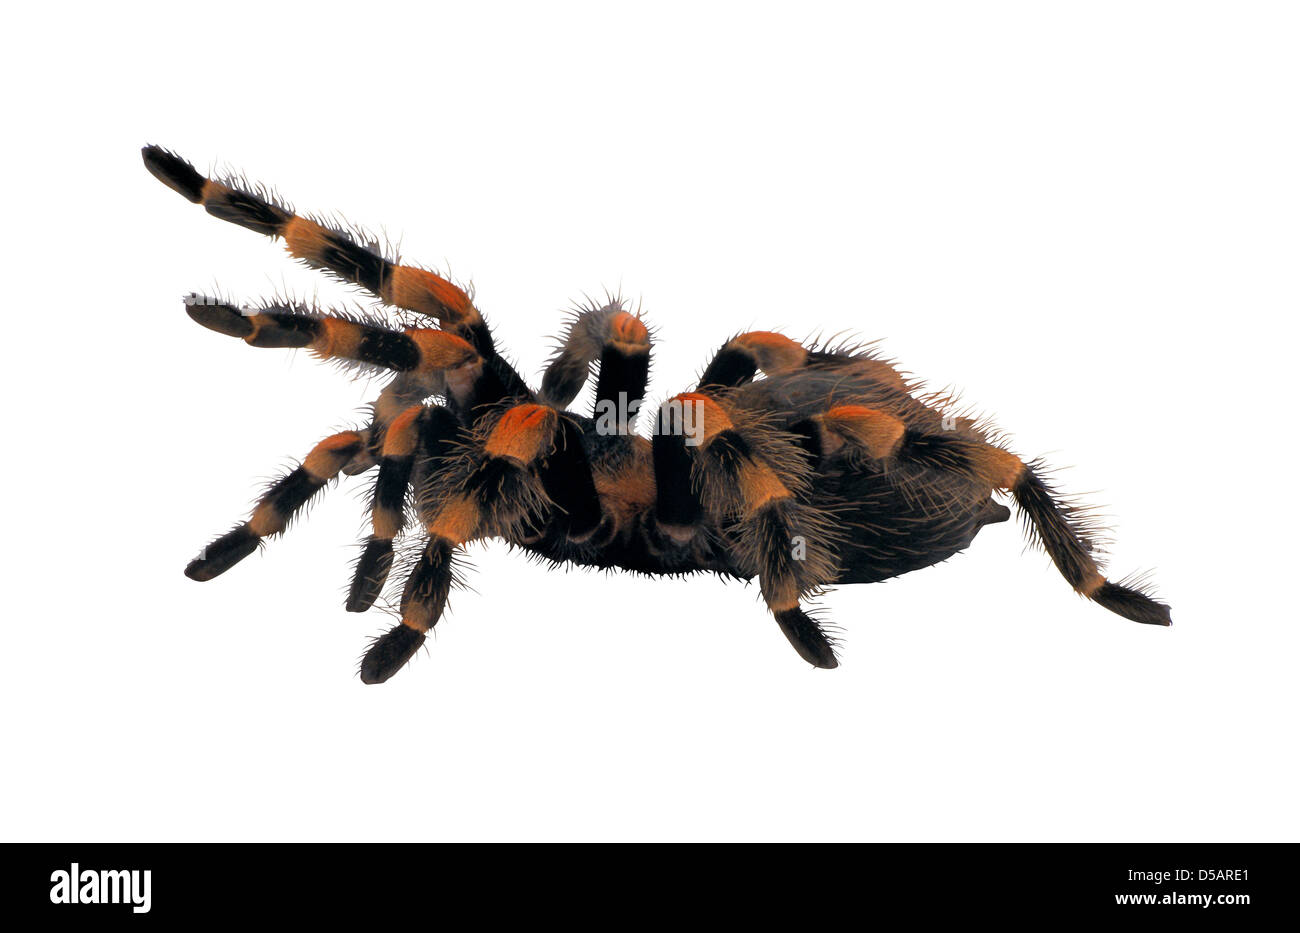 Mexican redknee tarantula Stock Photo